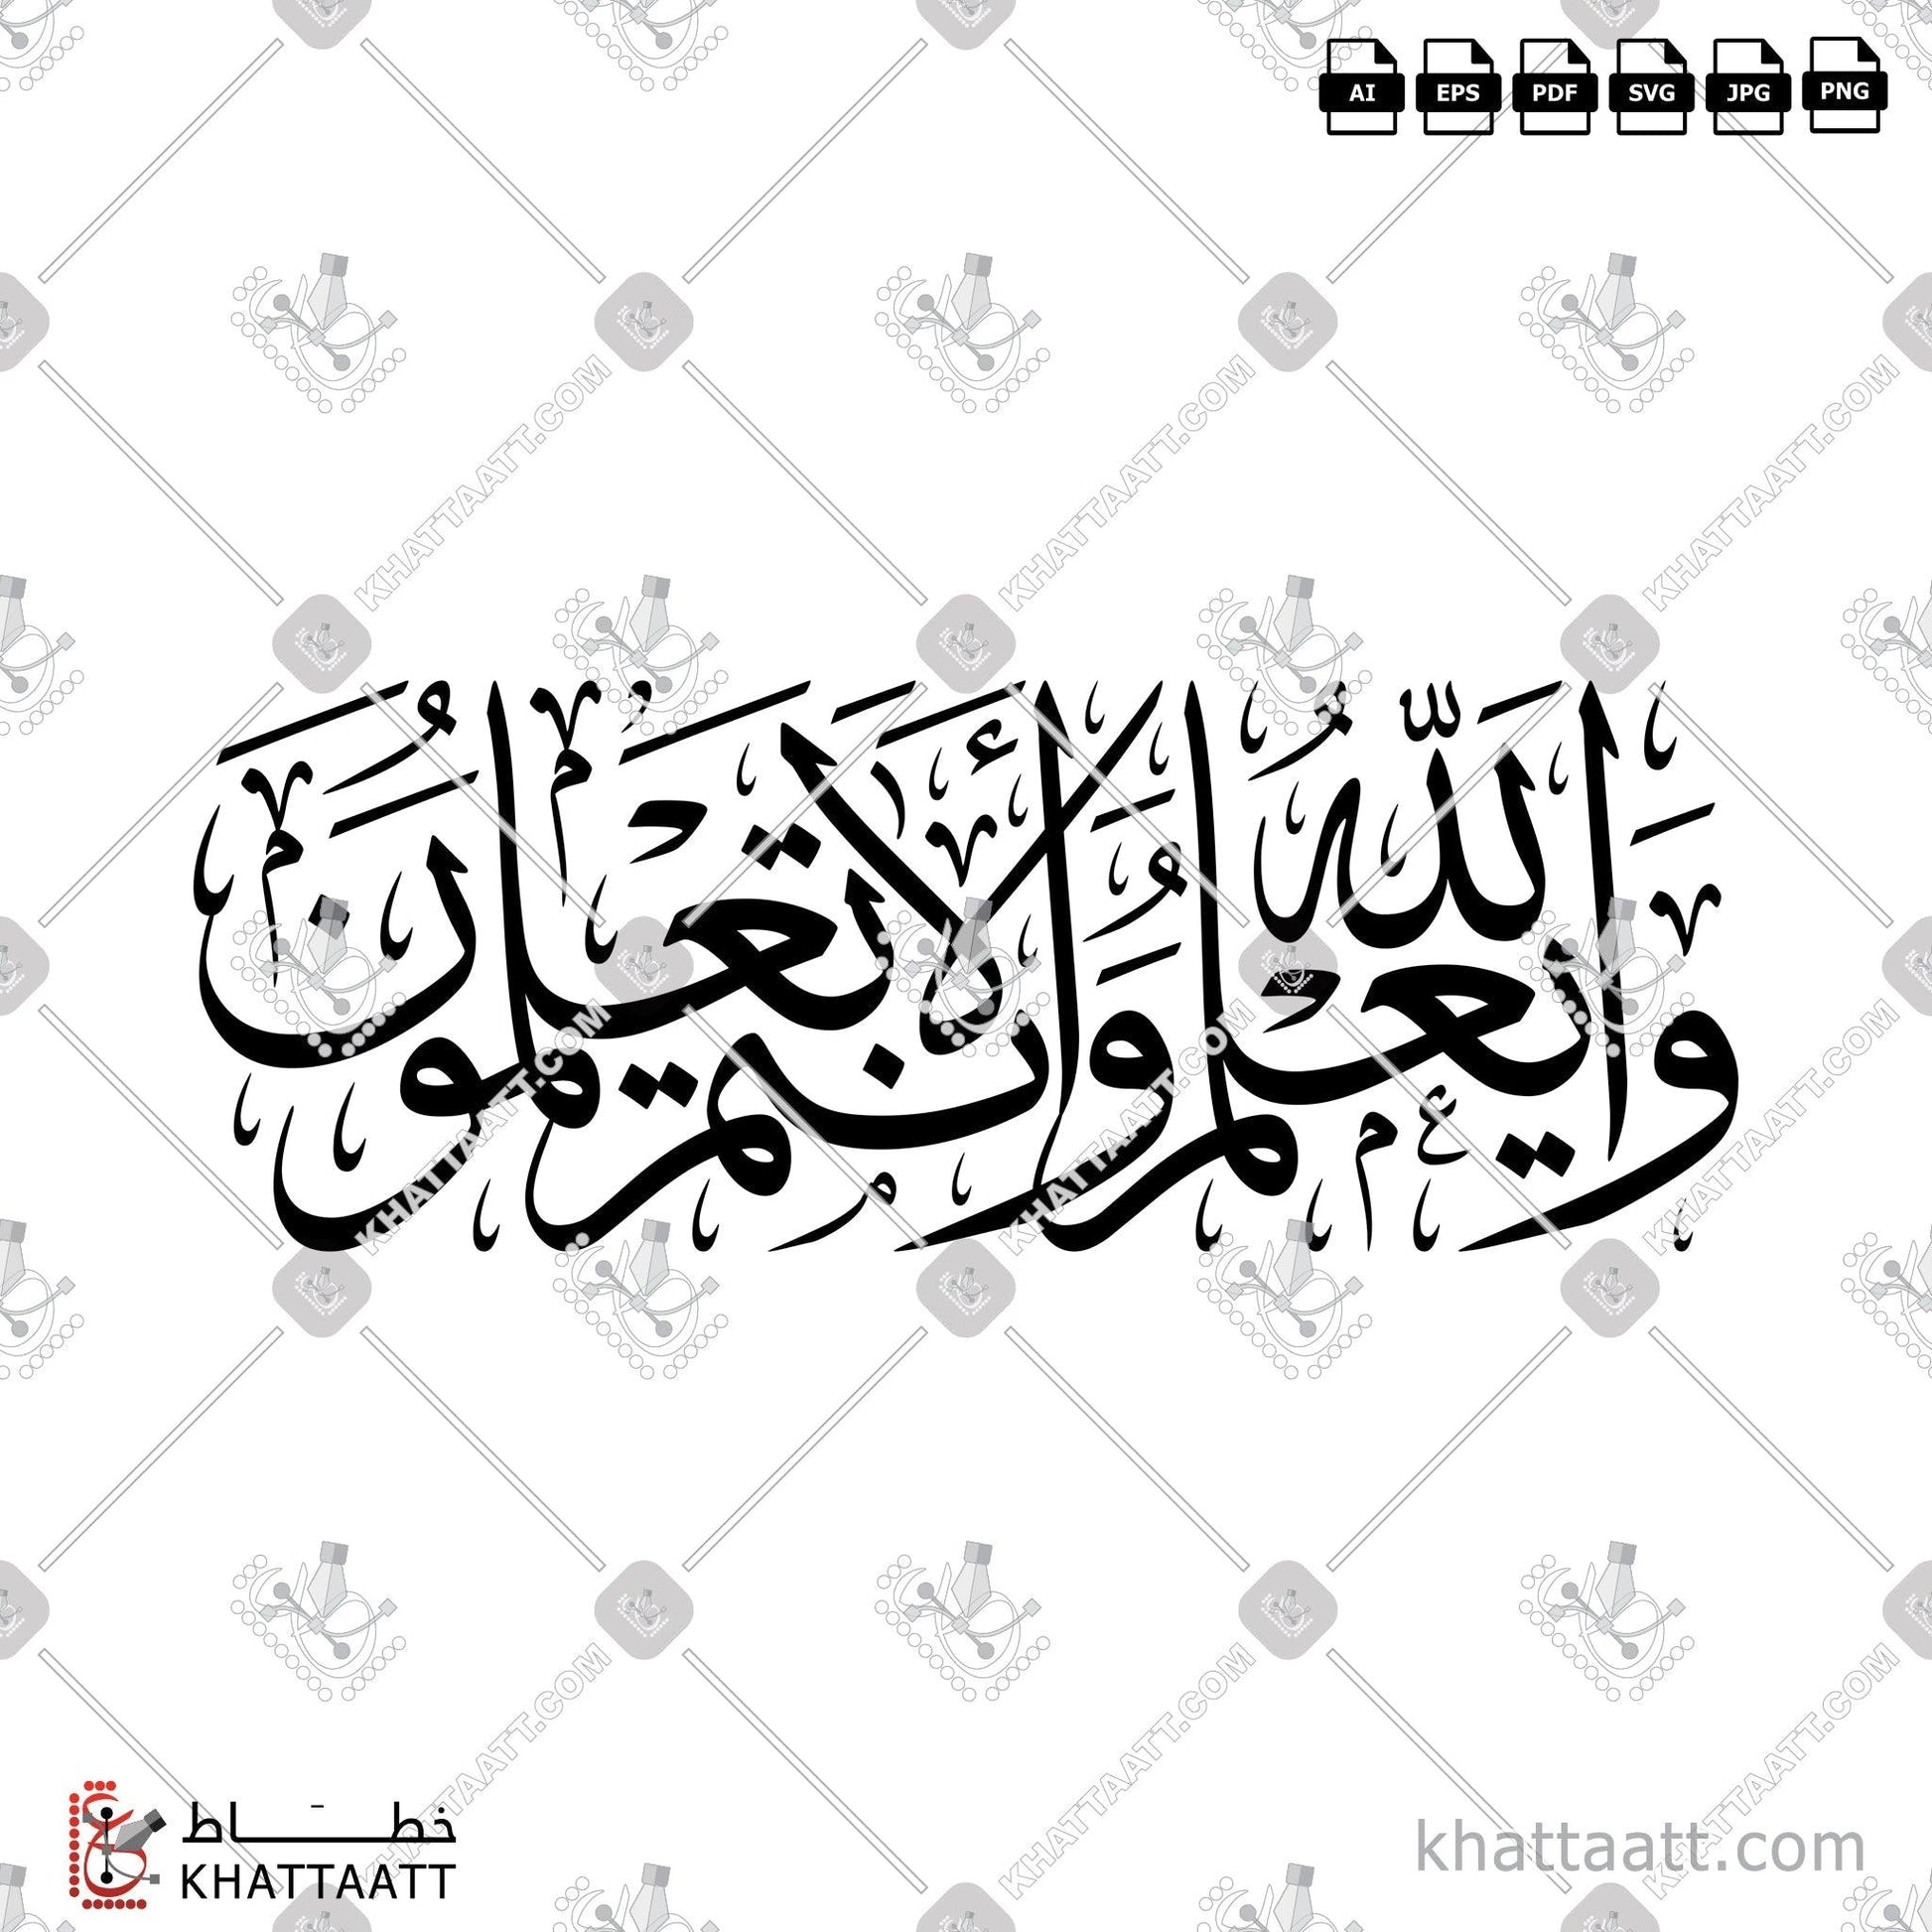 Digital Arabic calligraphy vector of والله يعلم وأنتم لا تعلمون in Thuluth - خط الثلث